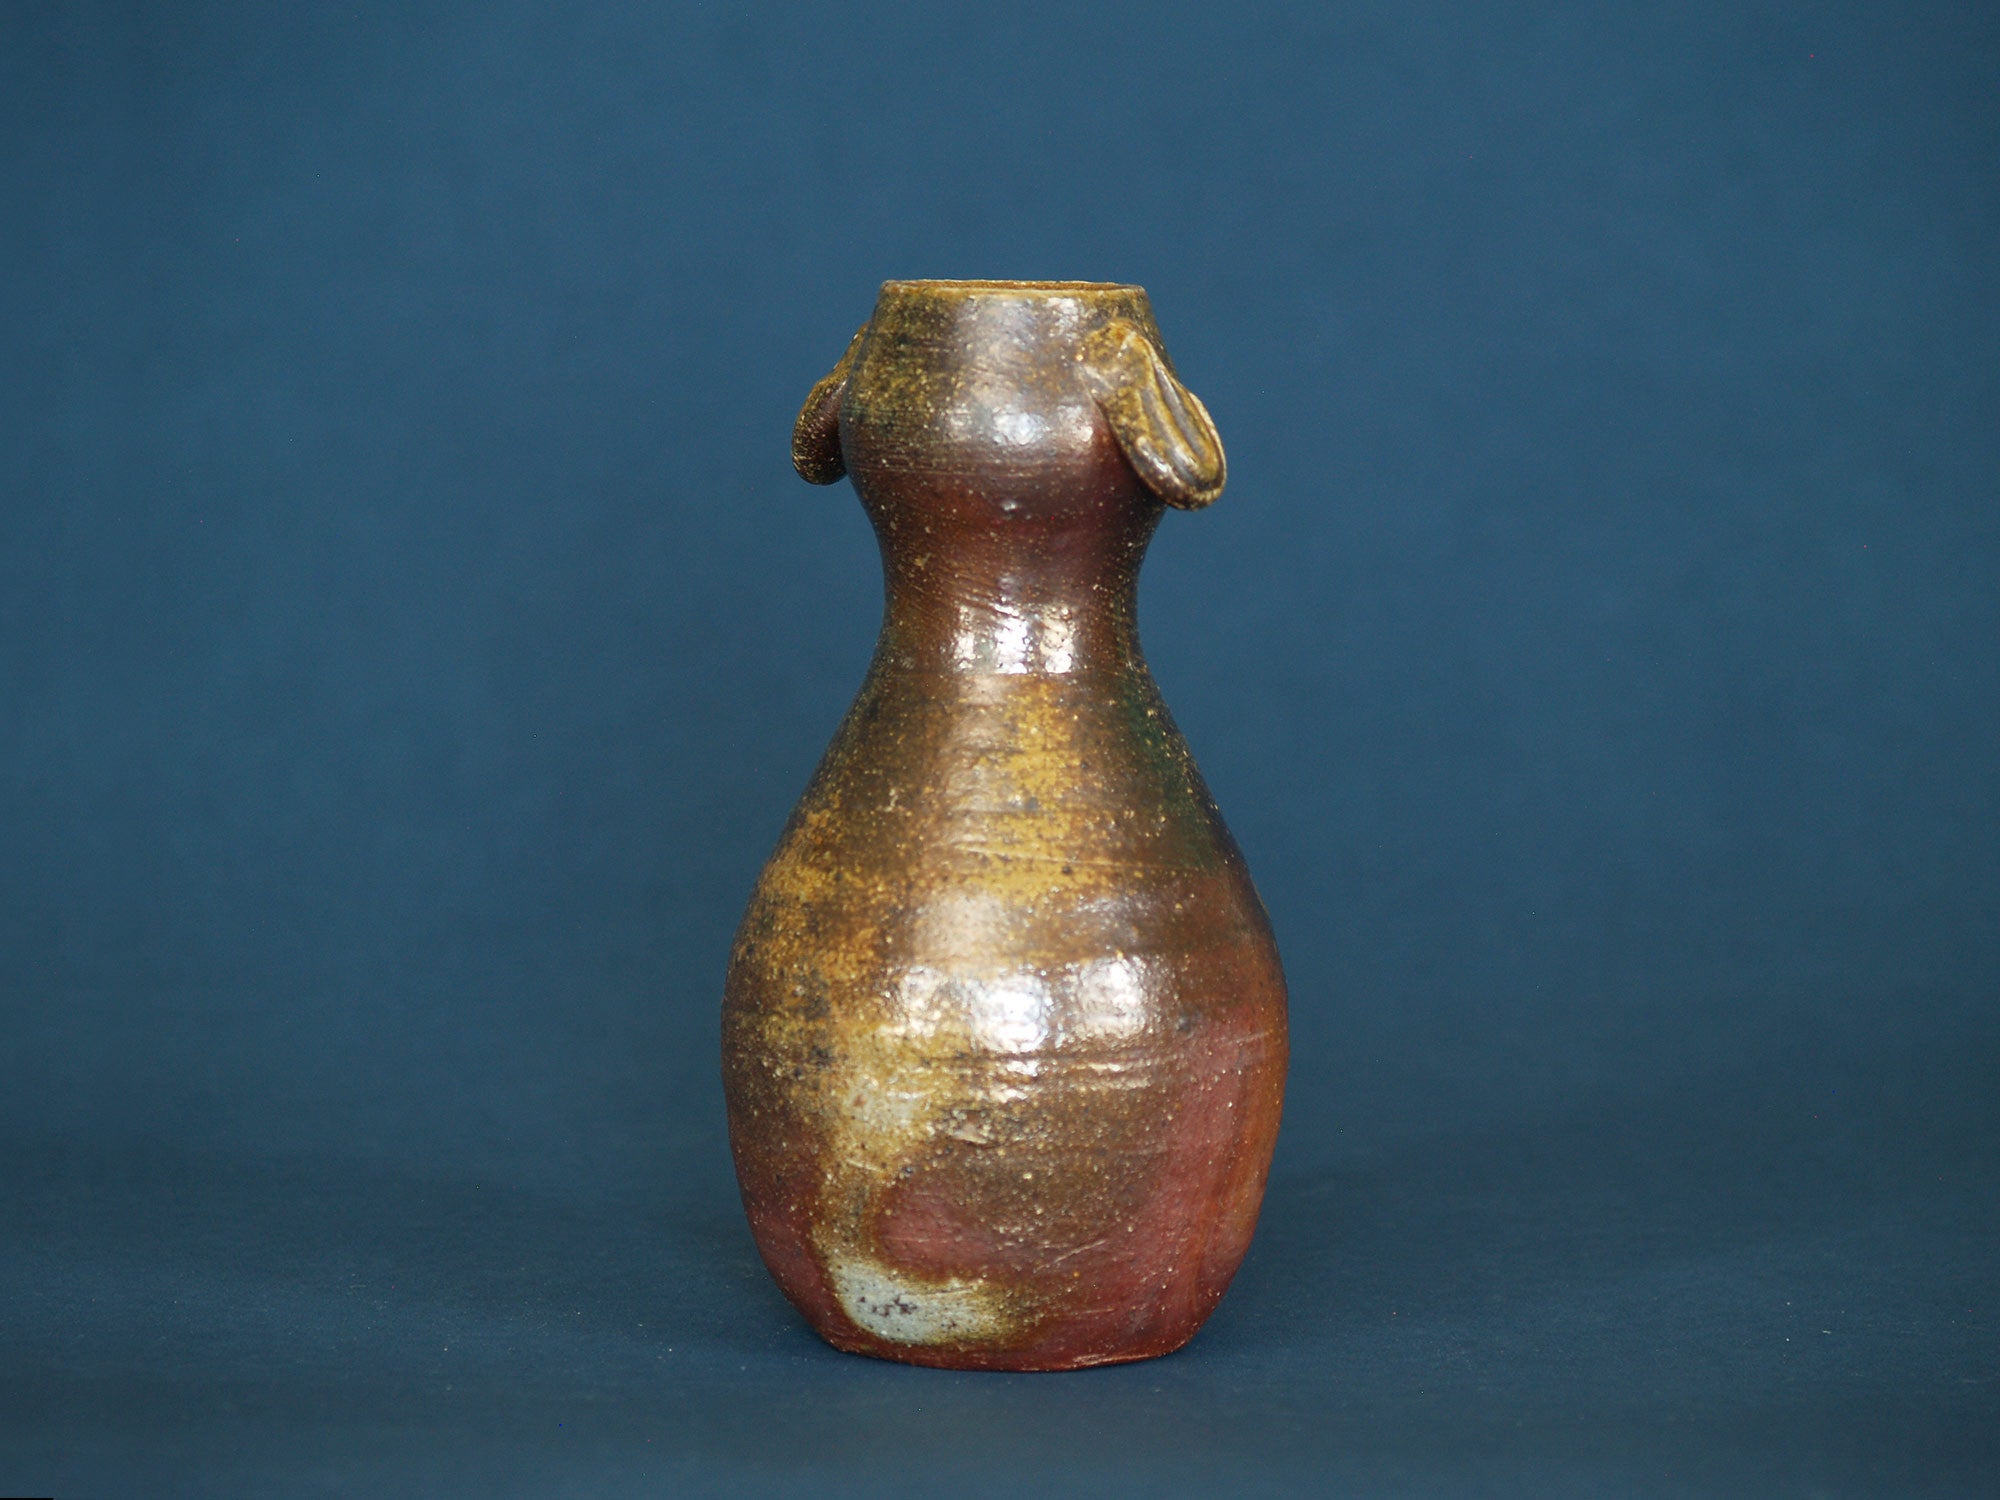 Vase Hyotan de Atsuro Yabe, Japon (vers 1980)..Hyotan Bizen ware vase by Atsuro Yabe, Japan (ca. 1980)